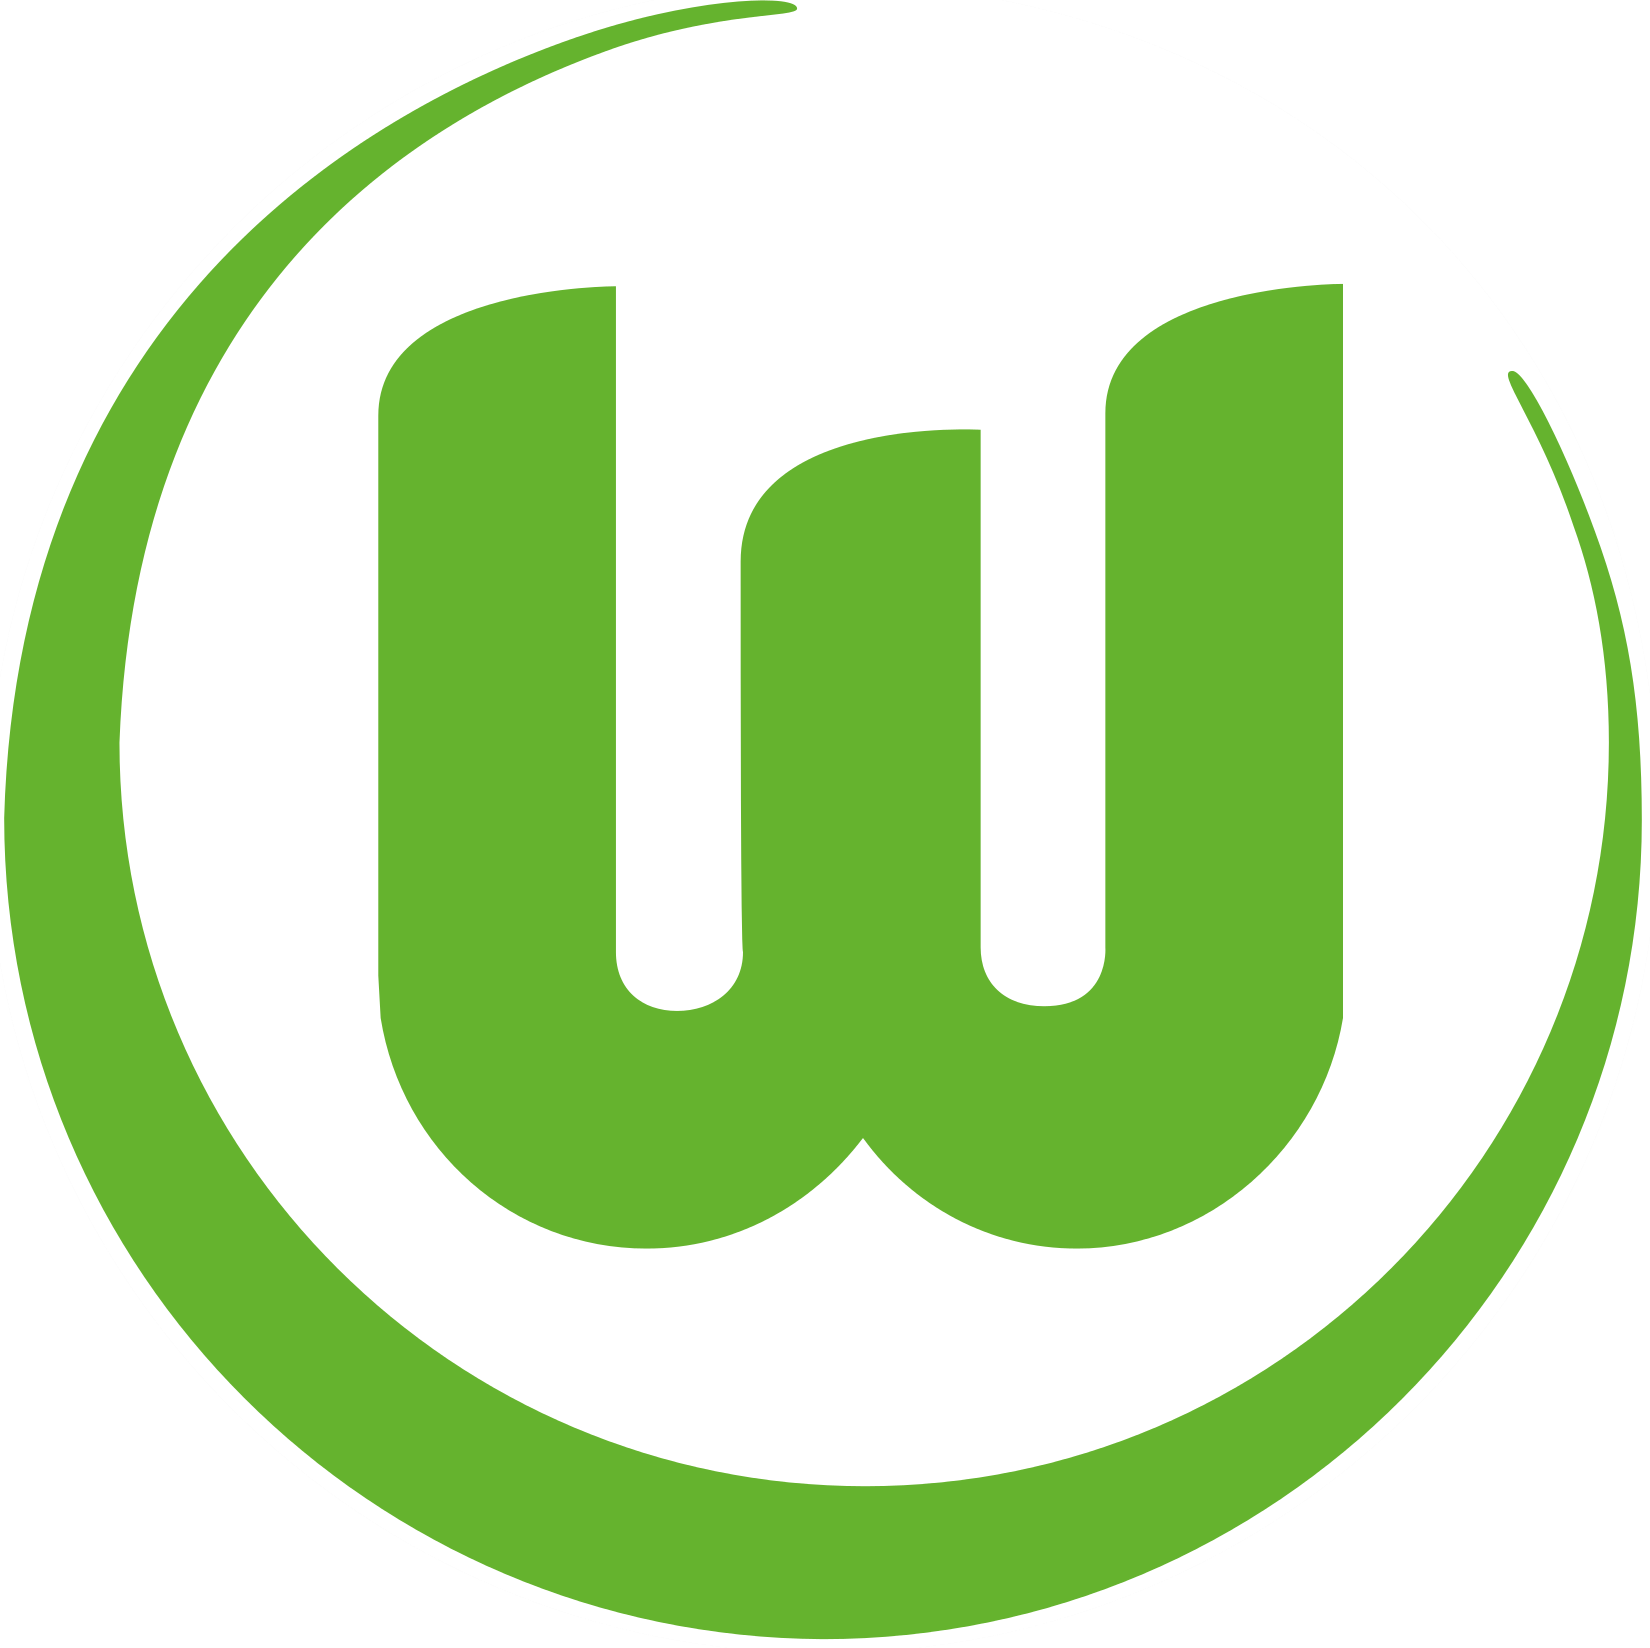 Wappen VfL Wolfsburg 1945 diverse  89596